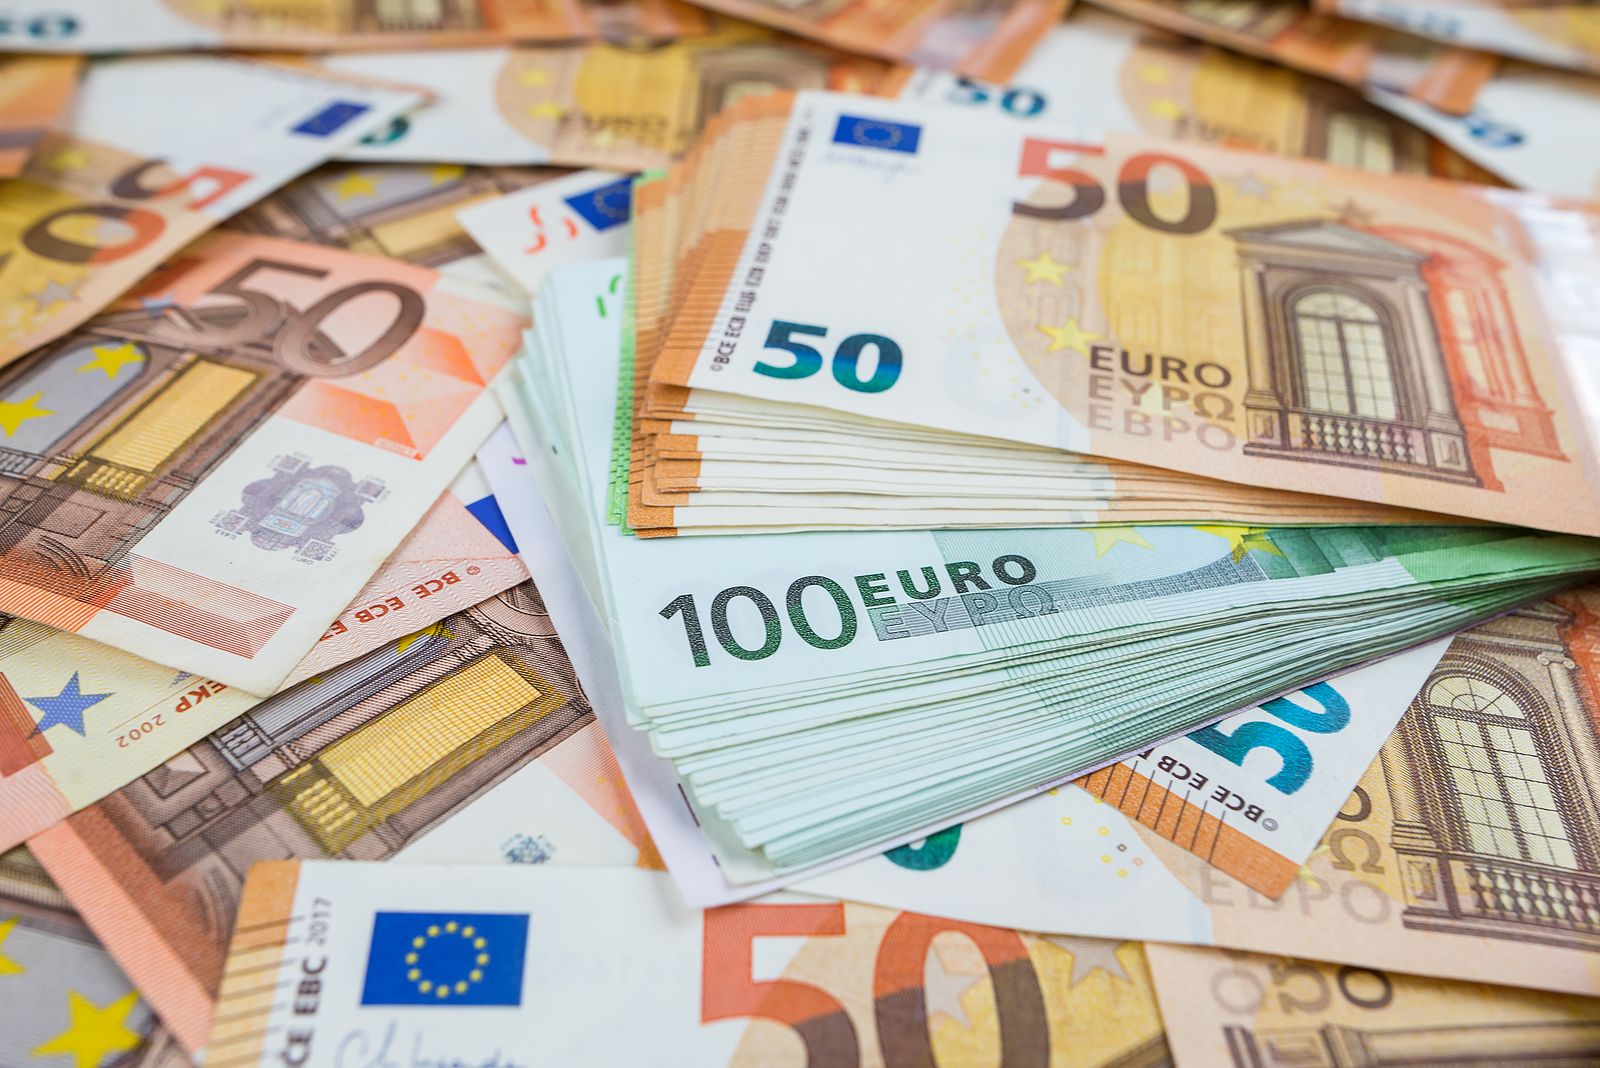 La Policía alerta de un engaño con billetes de 20 euros falsos